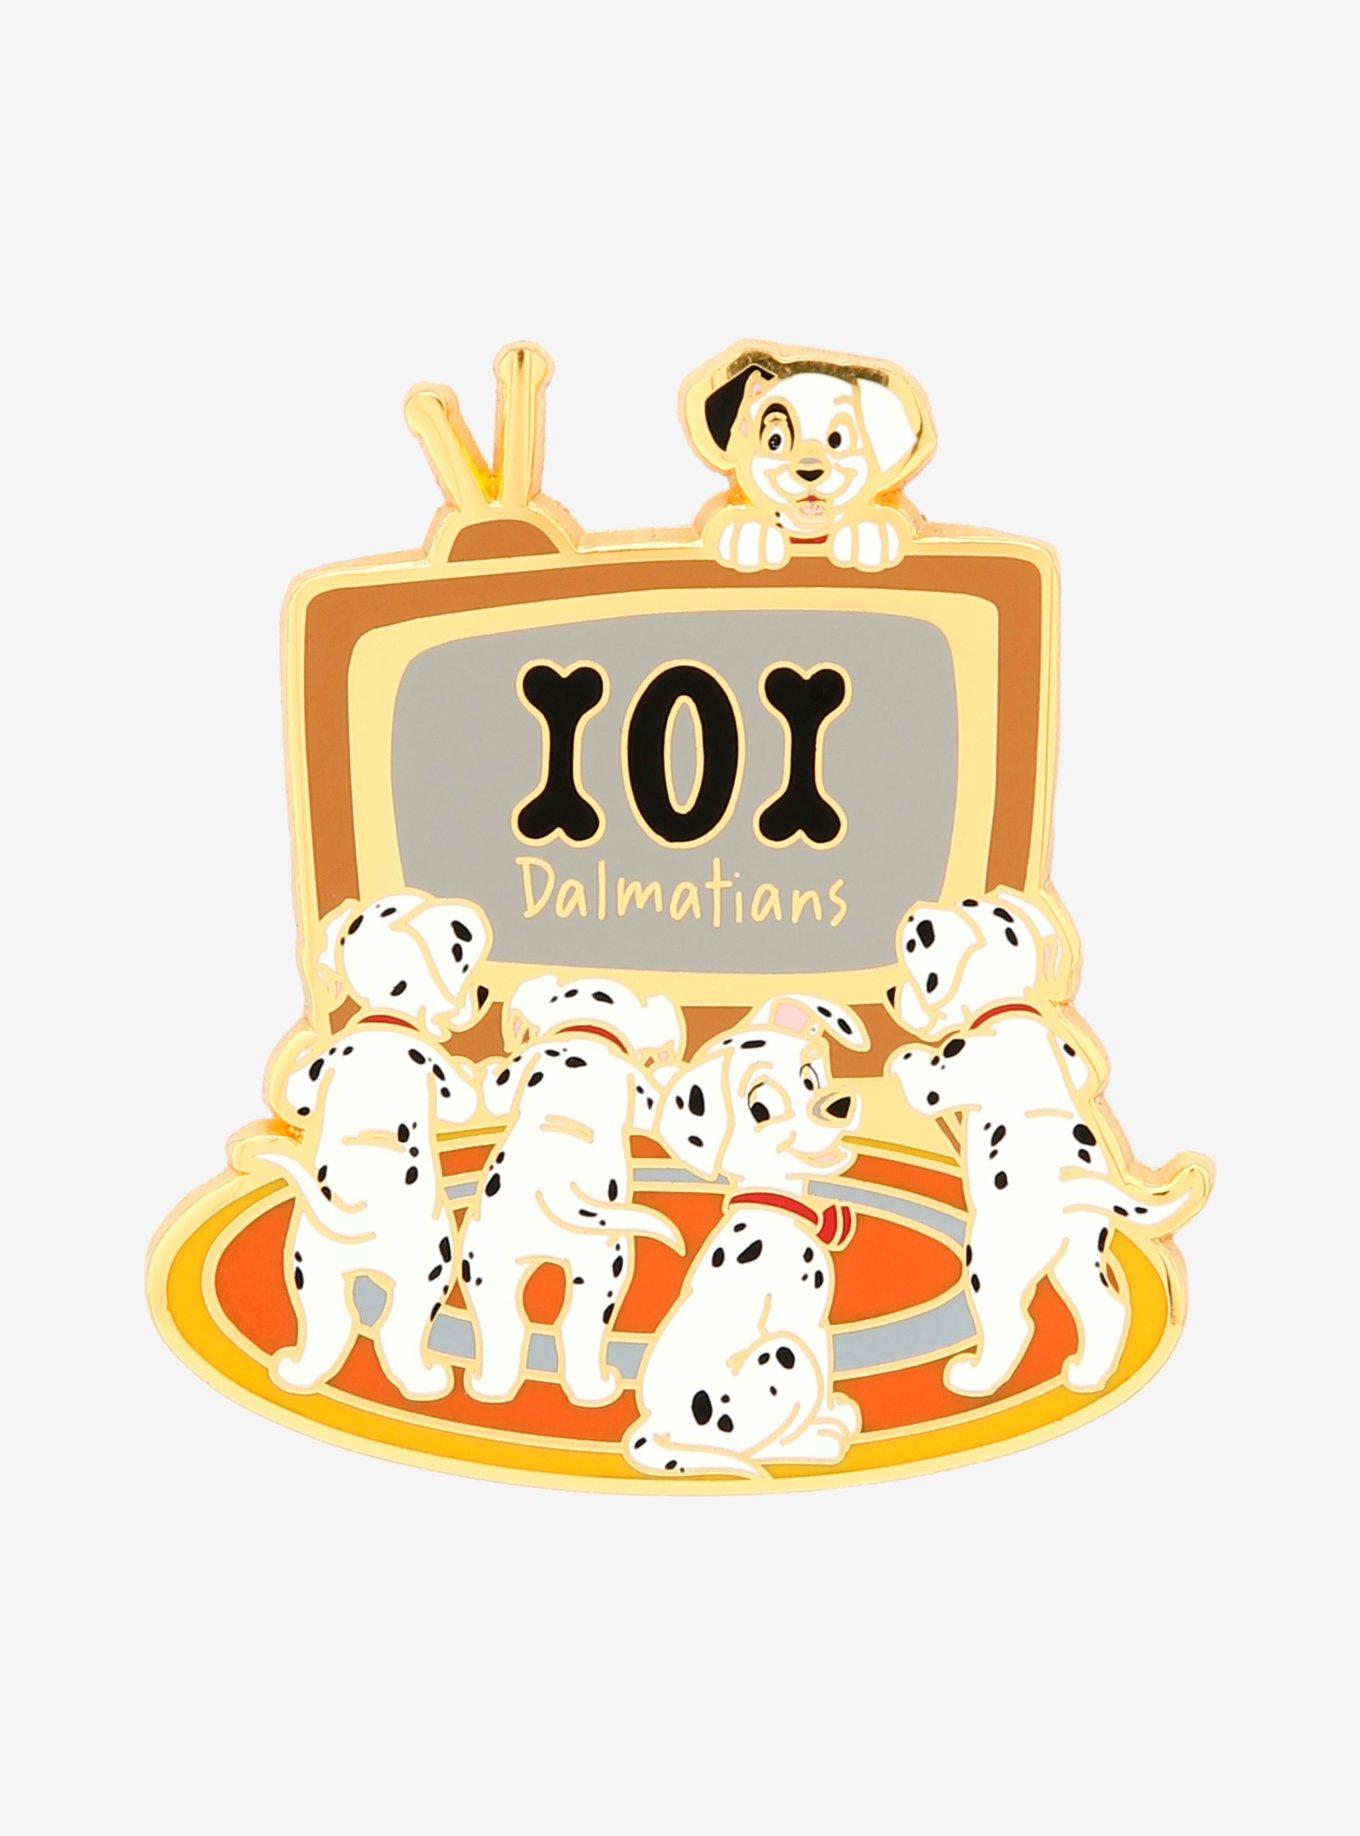 Disney 101 Dalmatians Puppies TV Enamel Pin - BoxLunch Exclusive, , hi-res